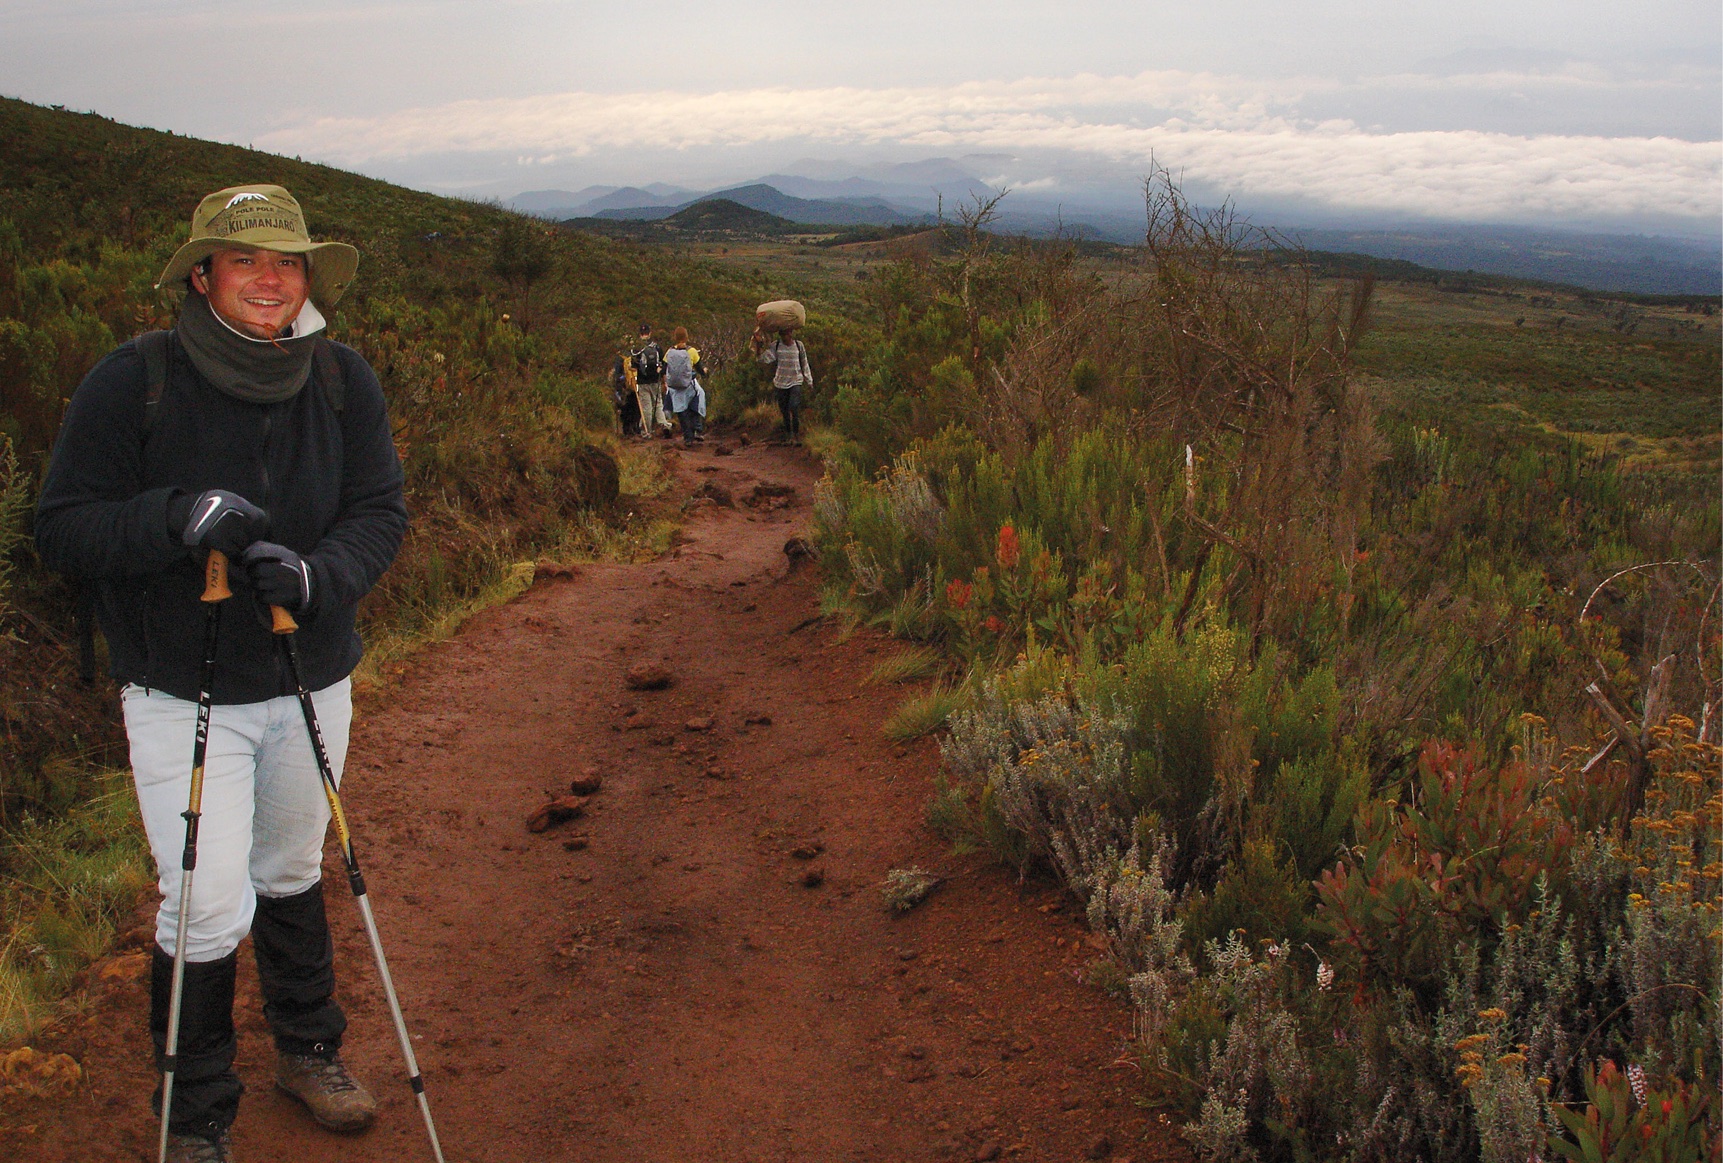 Foto beim Abstieg eines rostbraunen, lehmigen, stärker bergab führenden Wegabschnitts auf dem Kilimandscharo etwa auf der dritten Etappe der Marangu Route, eingerahmt in satten grünen mit vereinzelt rötlich blühenden Gebirgssträuchern sowie einem weiten Blick bergab auf Wolken und kleinere Berge in der Ferne – links im Vordergrund steht der Verantwortliche für HikingTrailView.com mit Wanderstöcken, mit Lehm verschmierten Bergstiefeln, kniehohen Gamaschen, dünnen Handschuhen, einem grünen Mount-Kilimanjaro-Hut mit breiter Krempe sowie sonnenverbranntem Lächeln, mittig im Hintergrund die Rücken anderer Wanderer beim Abstieg sowie ein Träger, der uns mit großem Gepäcksack auf dem Kopf beim Aufstieg entgegenkommt